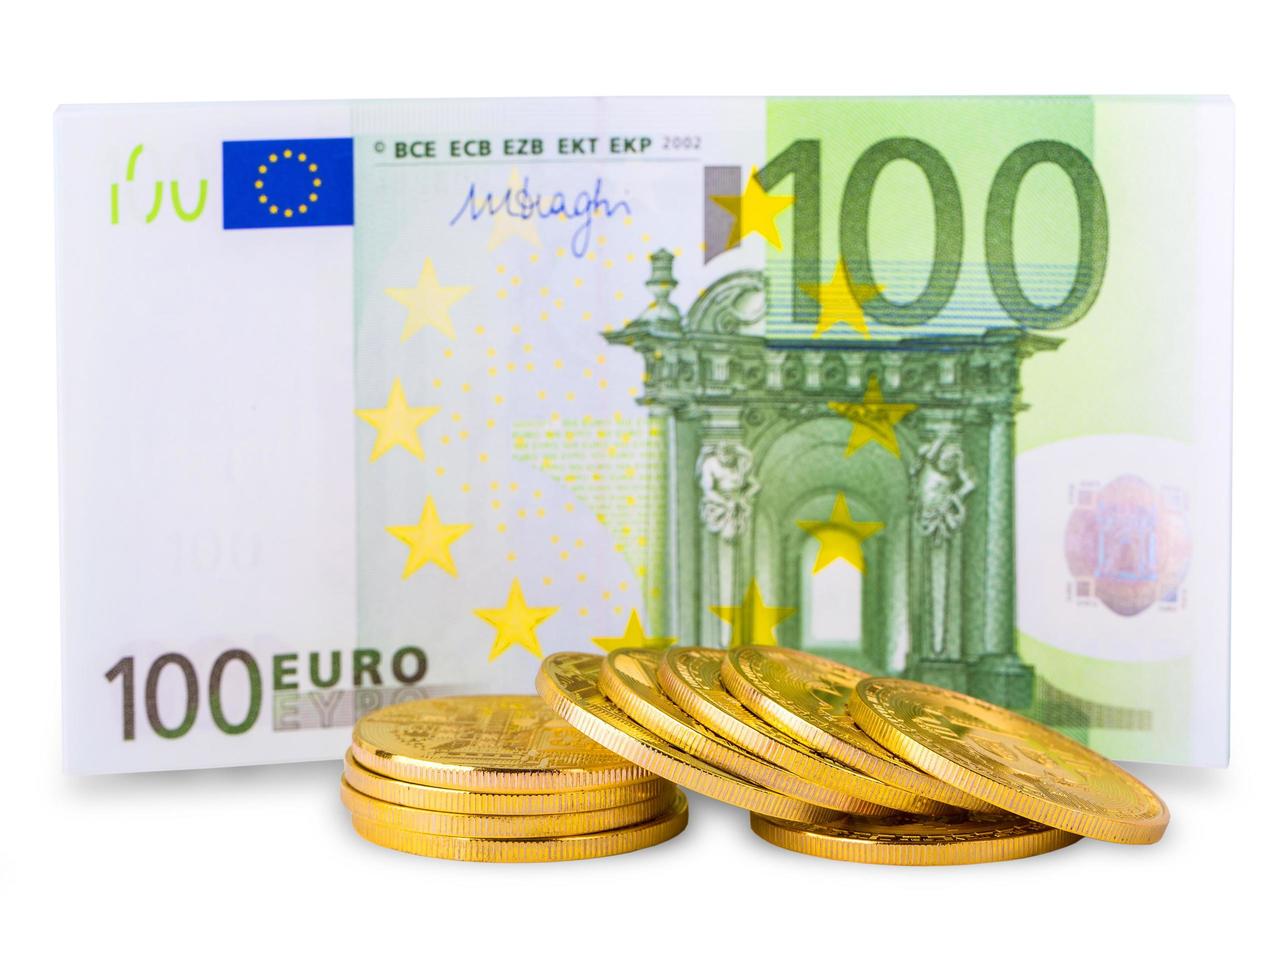 bitcoins op een stapel van honderd euro en een bolklok op leeg glas foto